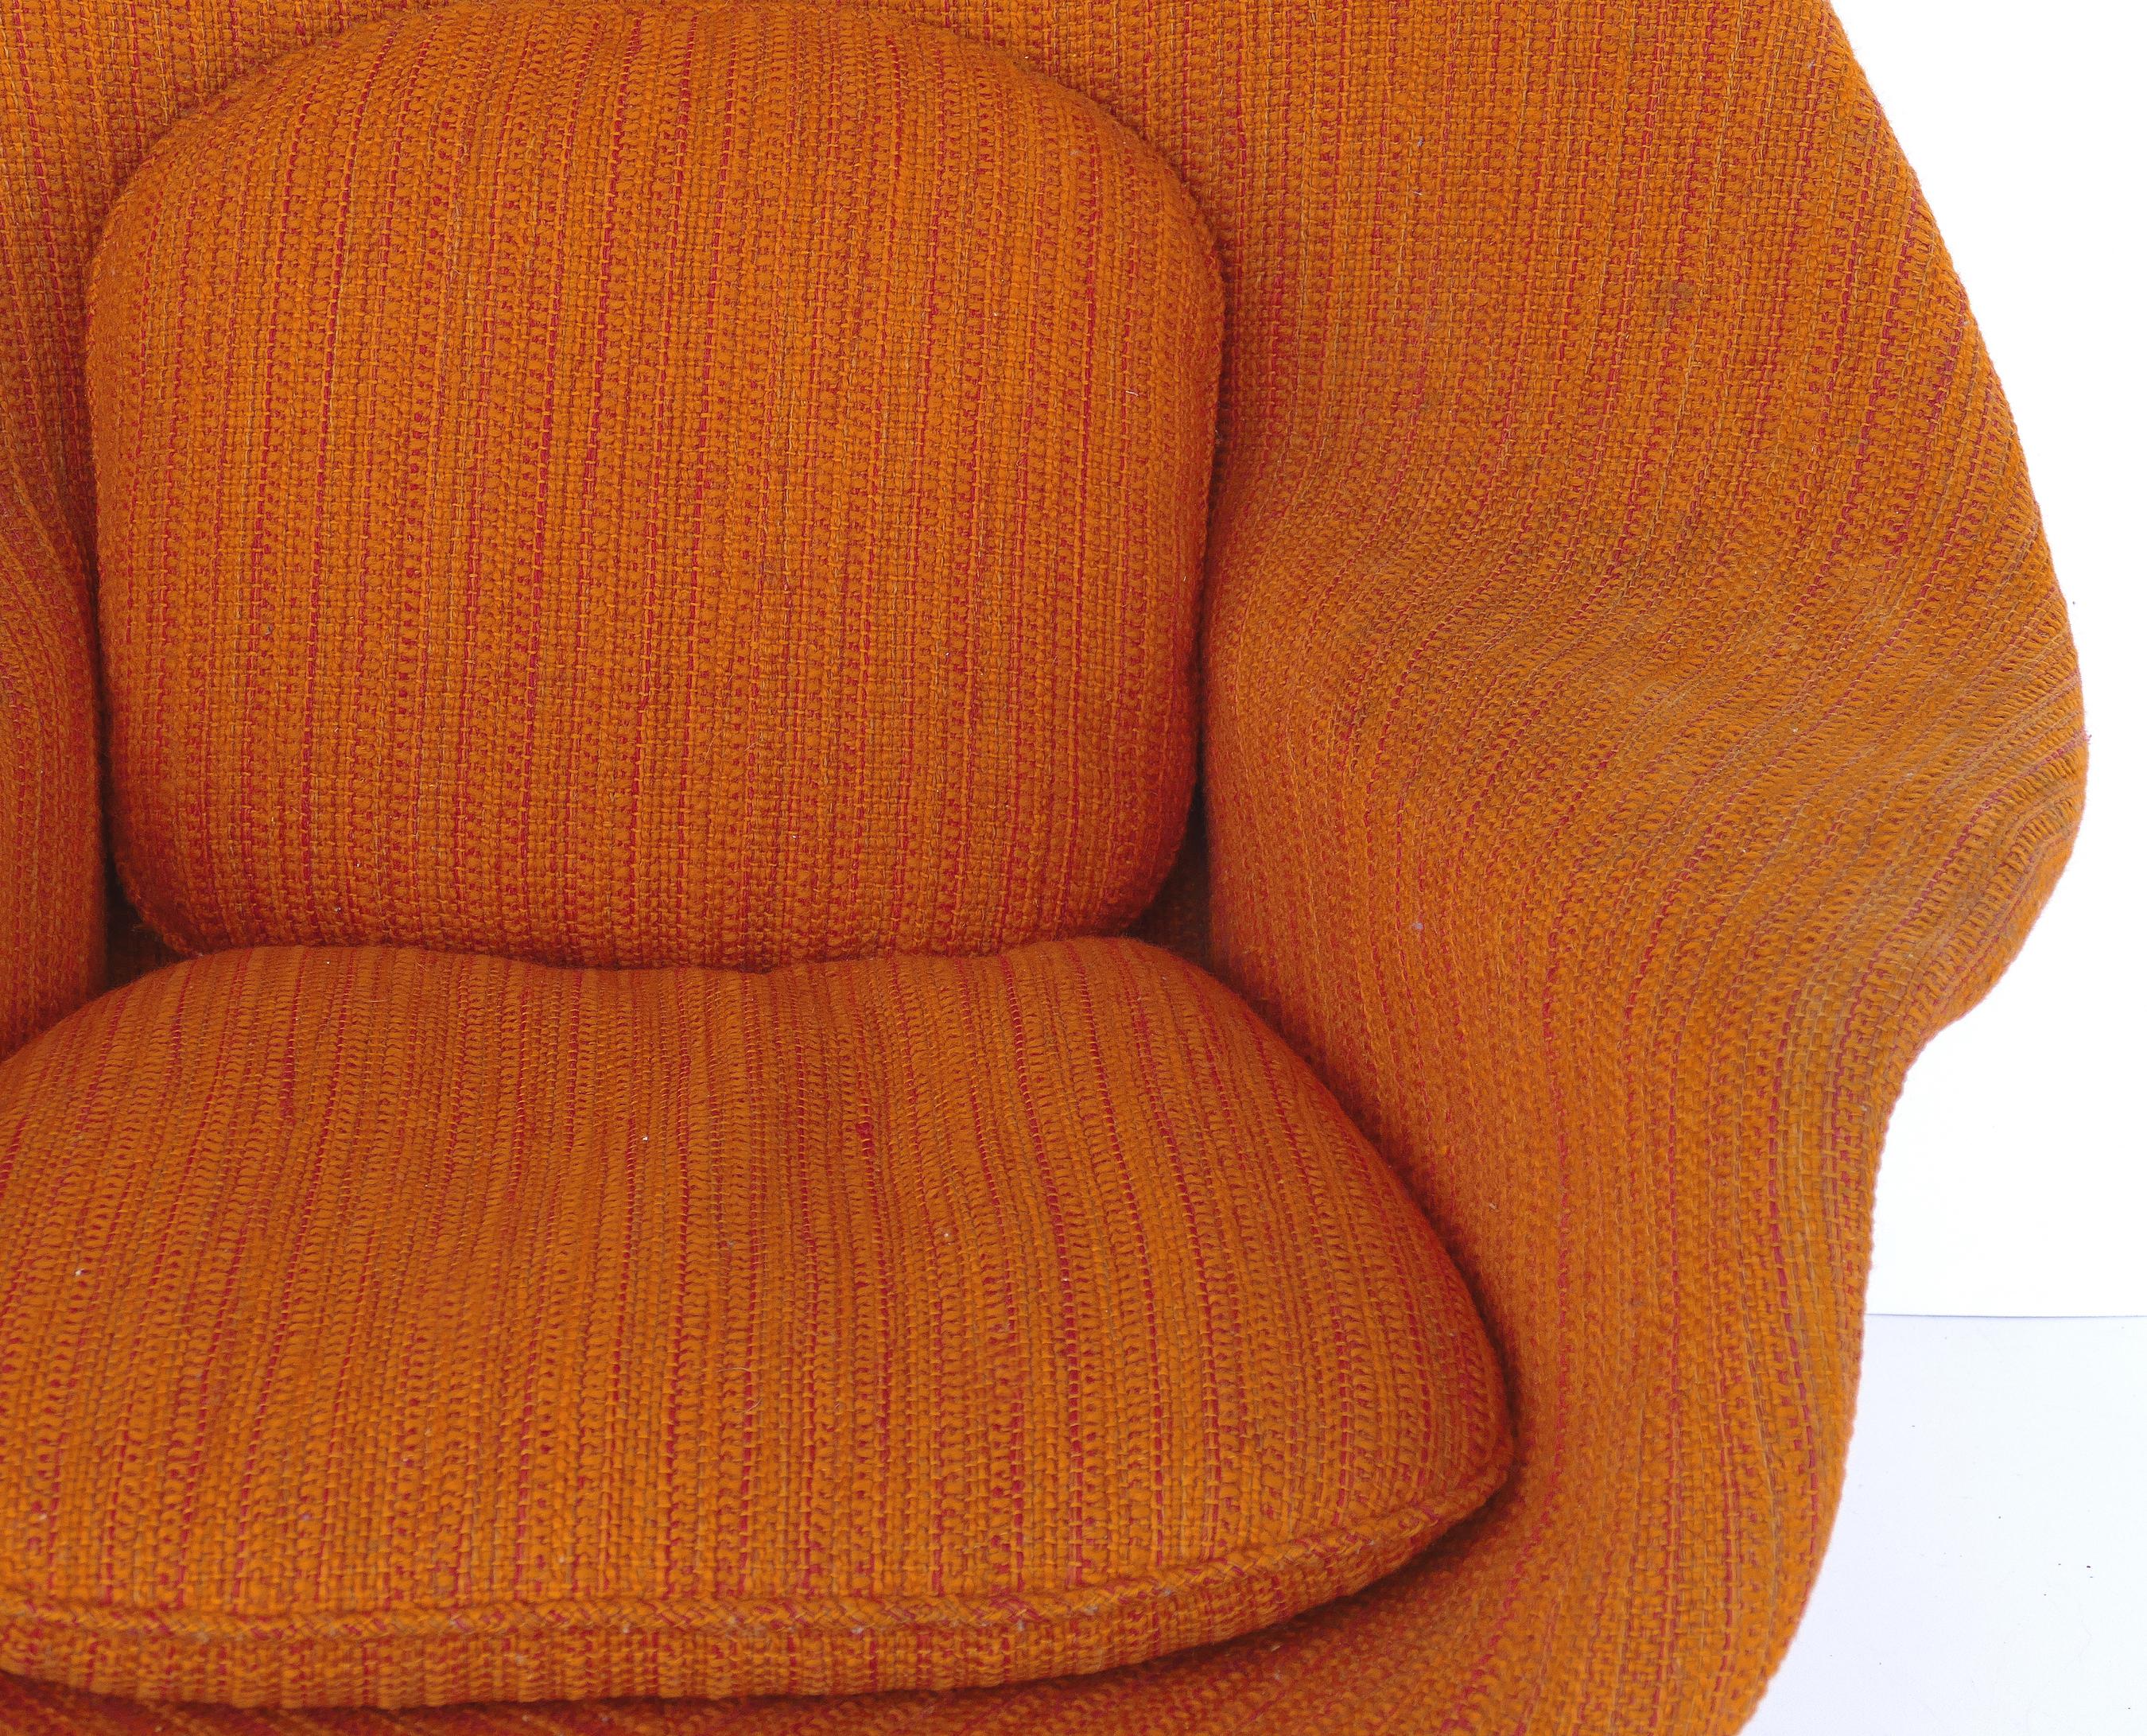 Metal Eero Saarinen Knoll Womb Chair in Knoll Cato Wool Fabric